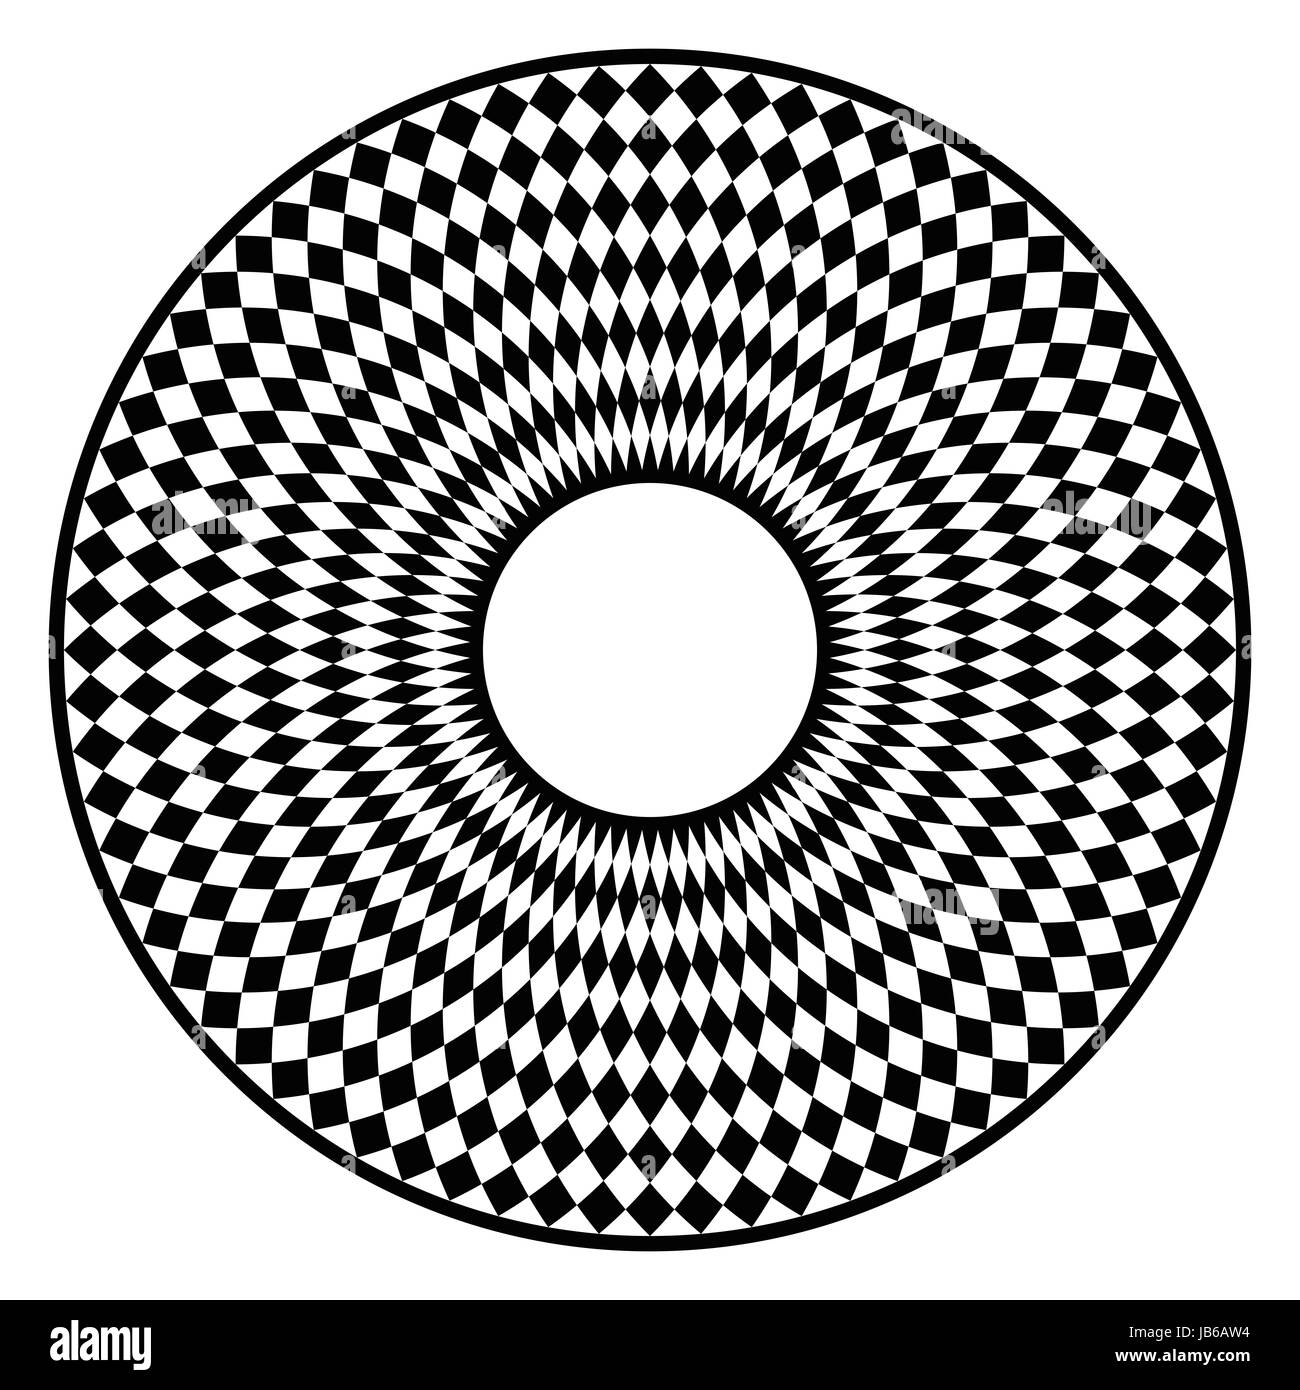 Kreisförmige Schachbrettmuster. Scheibe mit schwarzen Schachbrettmuster in einem Kreis mit rautenförmigen Fliesen. Eine optische Illusion von Bewegung erzeugt. Stockfoto